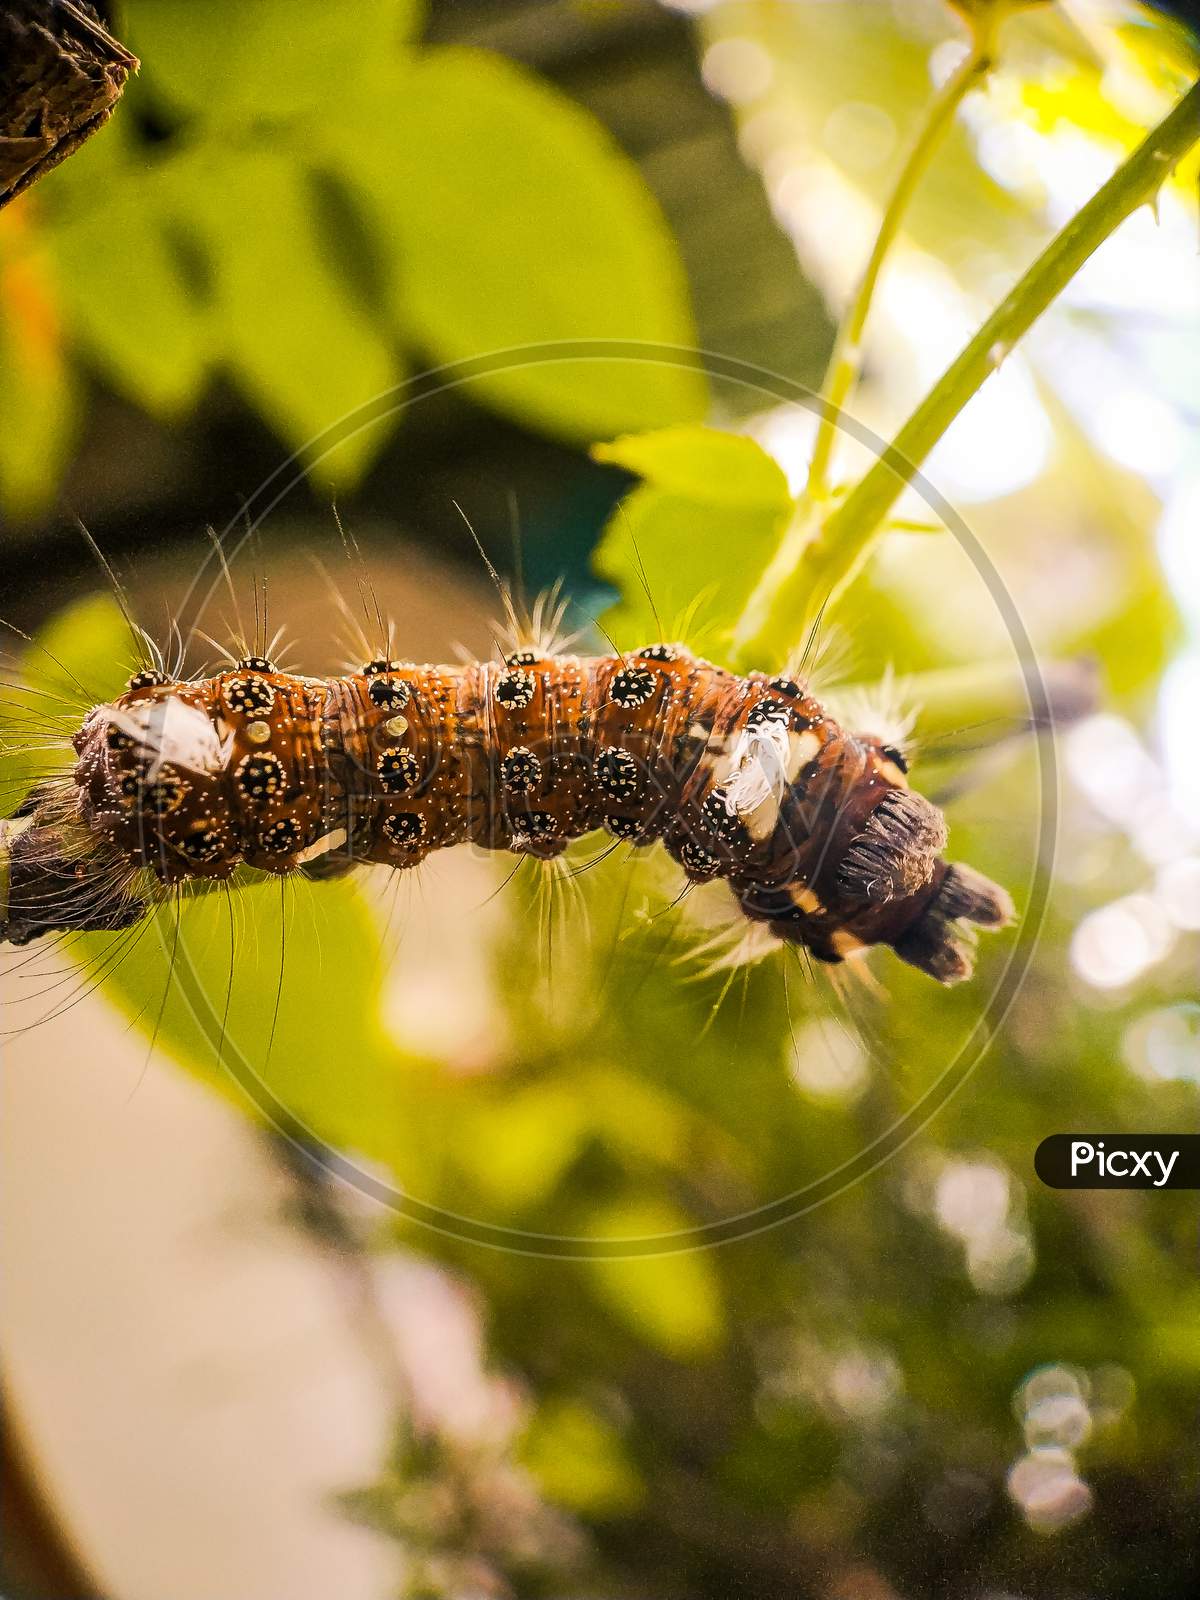 Caterpillar macro photography